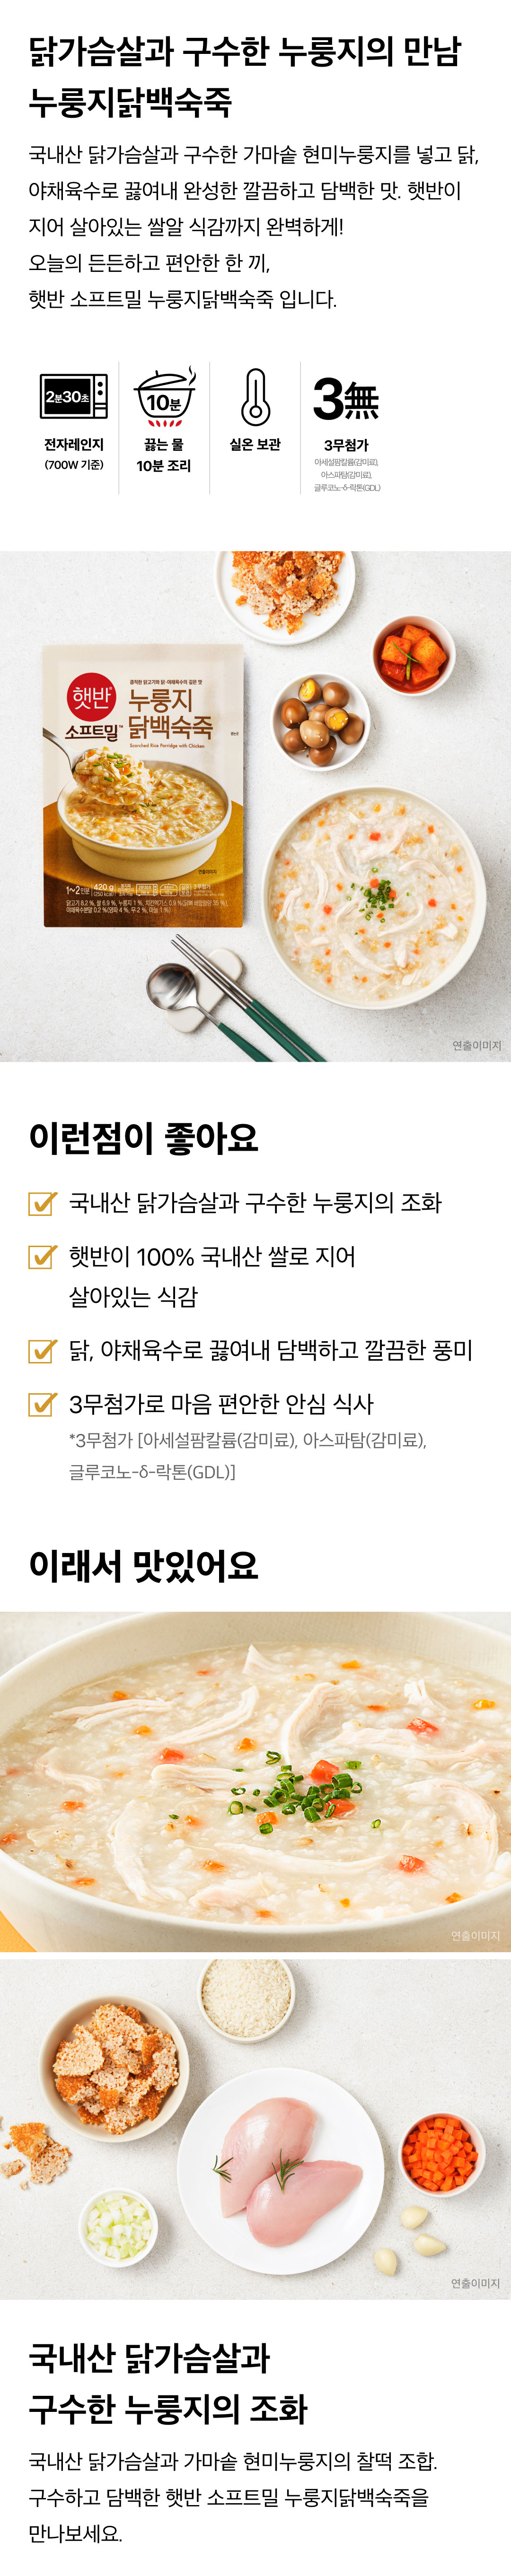 햇반소프트밀-누룽지닭백숙죽-420g-1000140152186